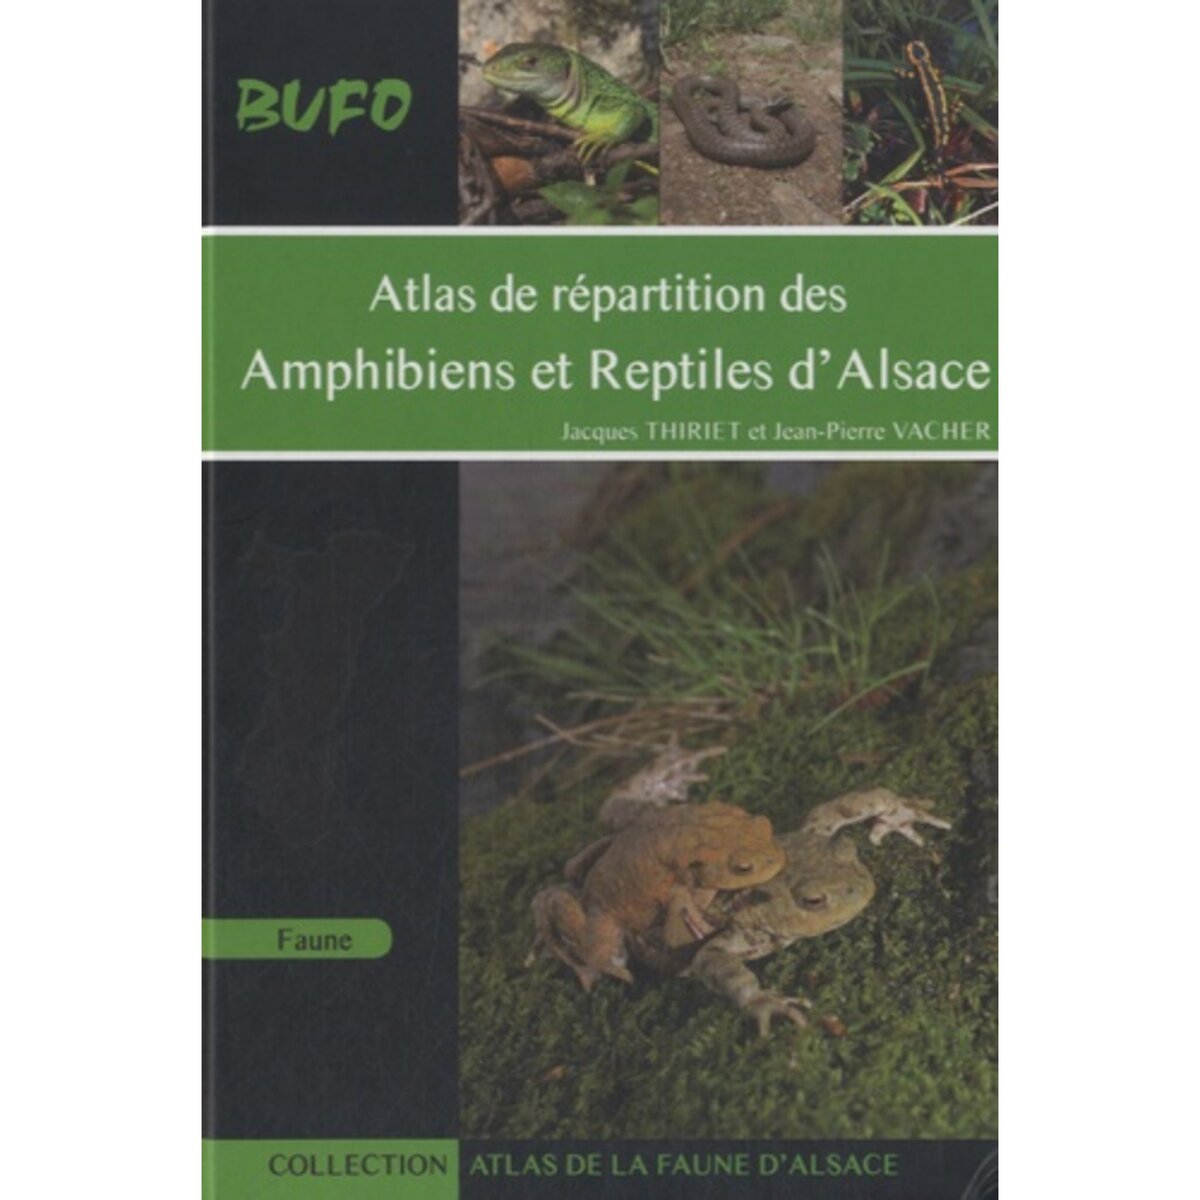  ATLAS DE REPARTITION DES AMPHIBIENS ET REPTILES D'ALSACE, Thiriet Jacques